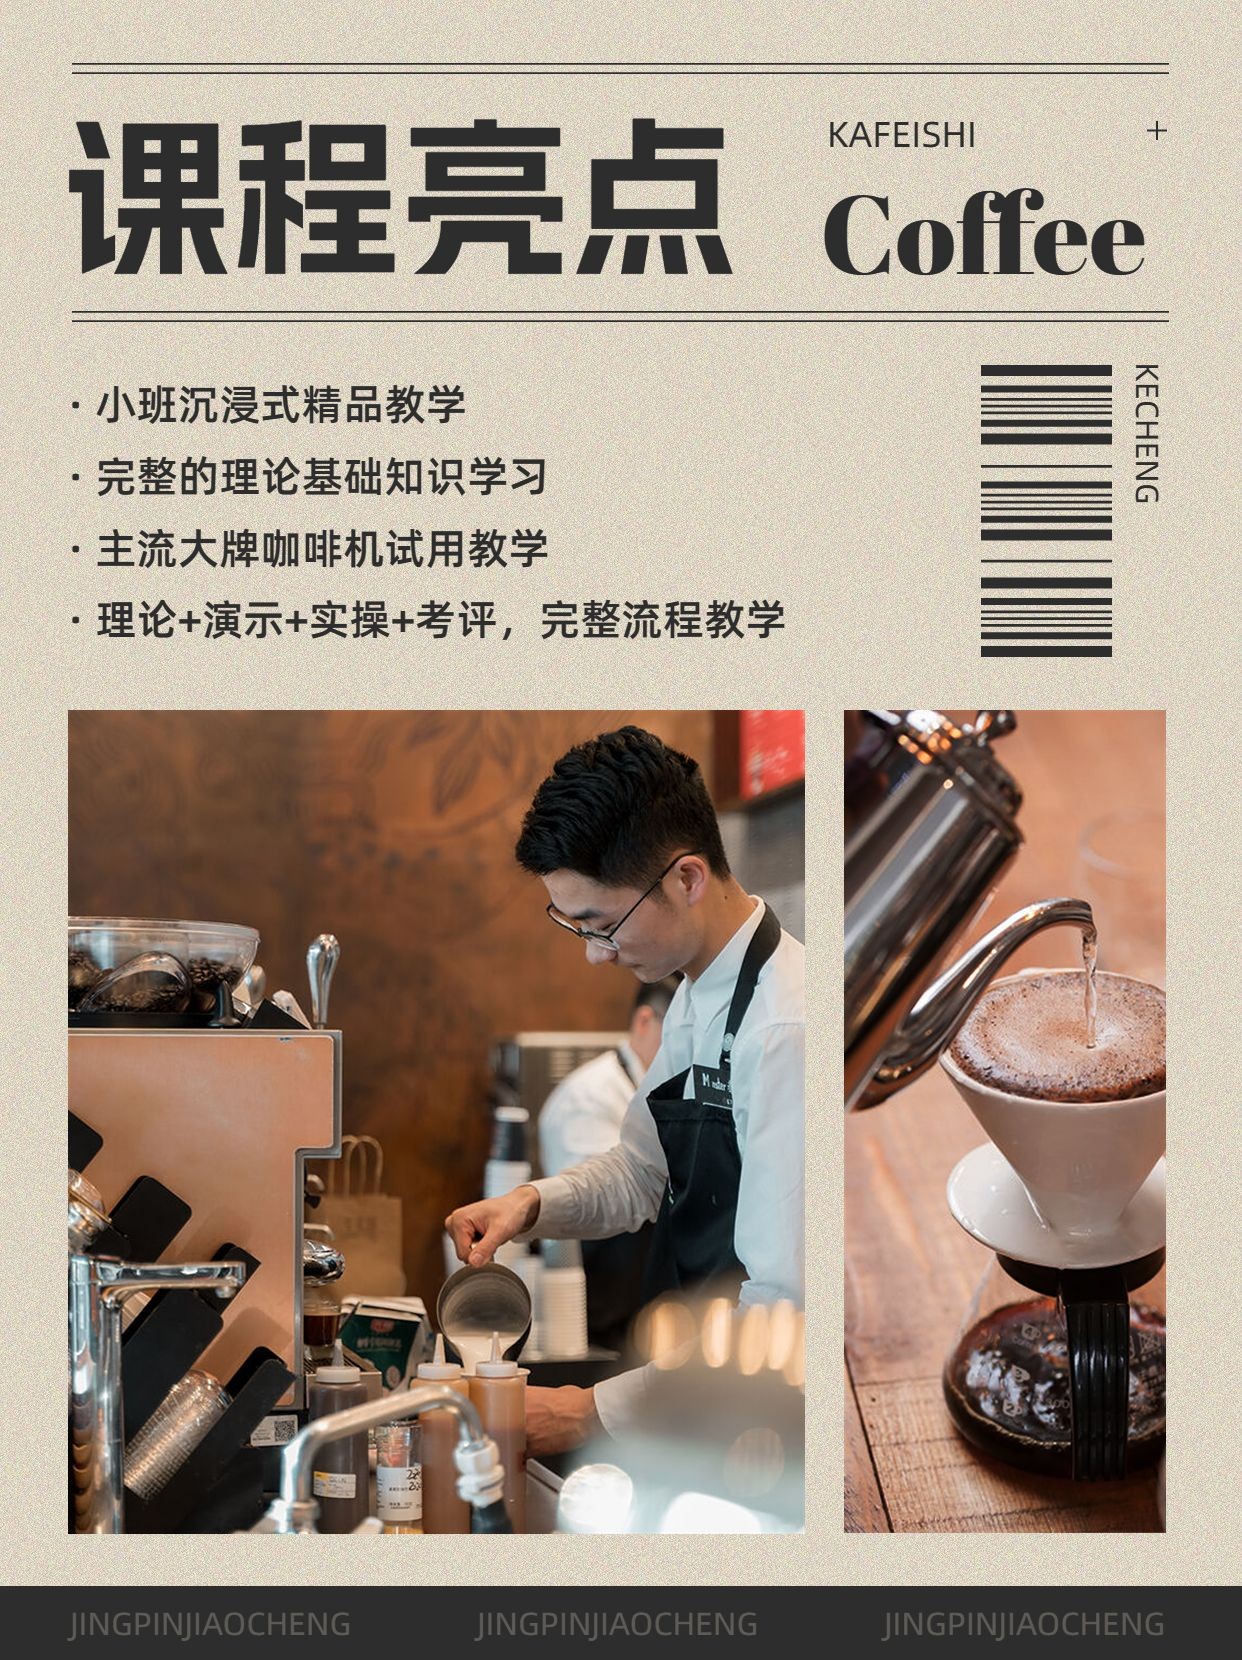 咖啡师技能培训课程招生促销杂志风小红书配图预览效果